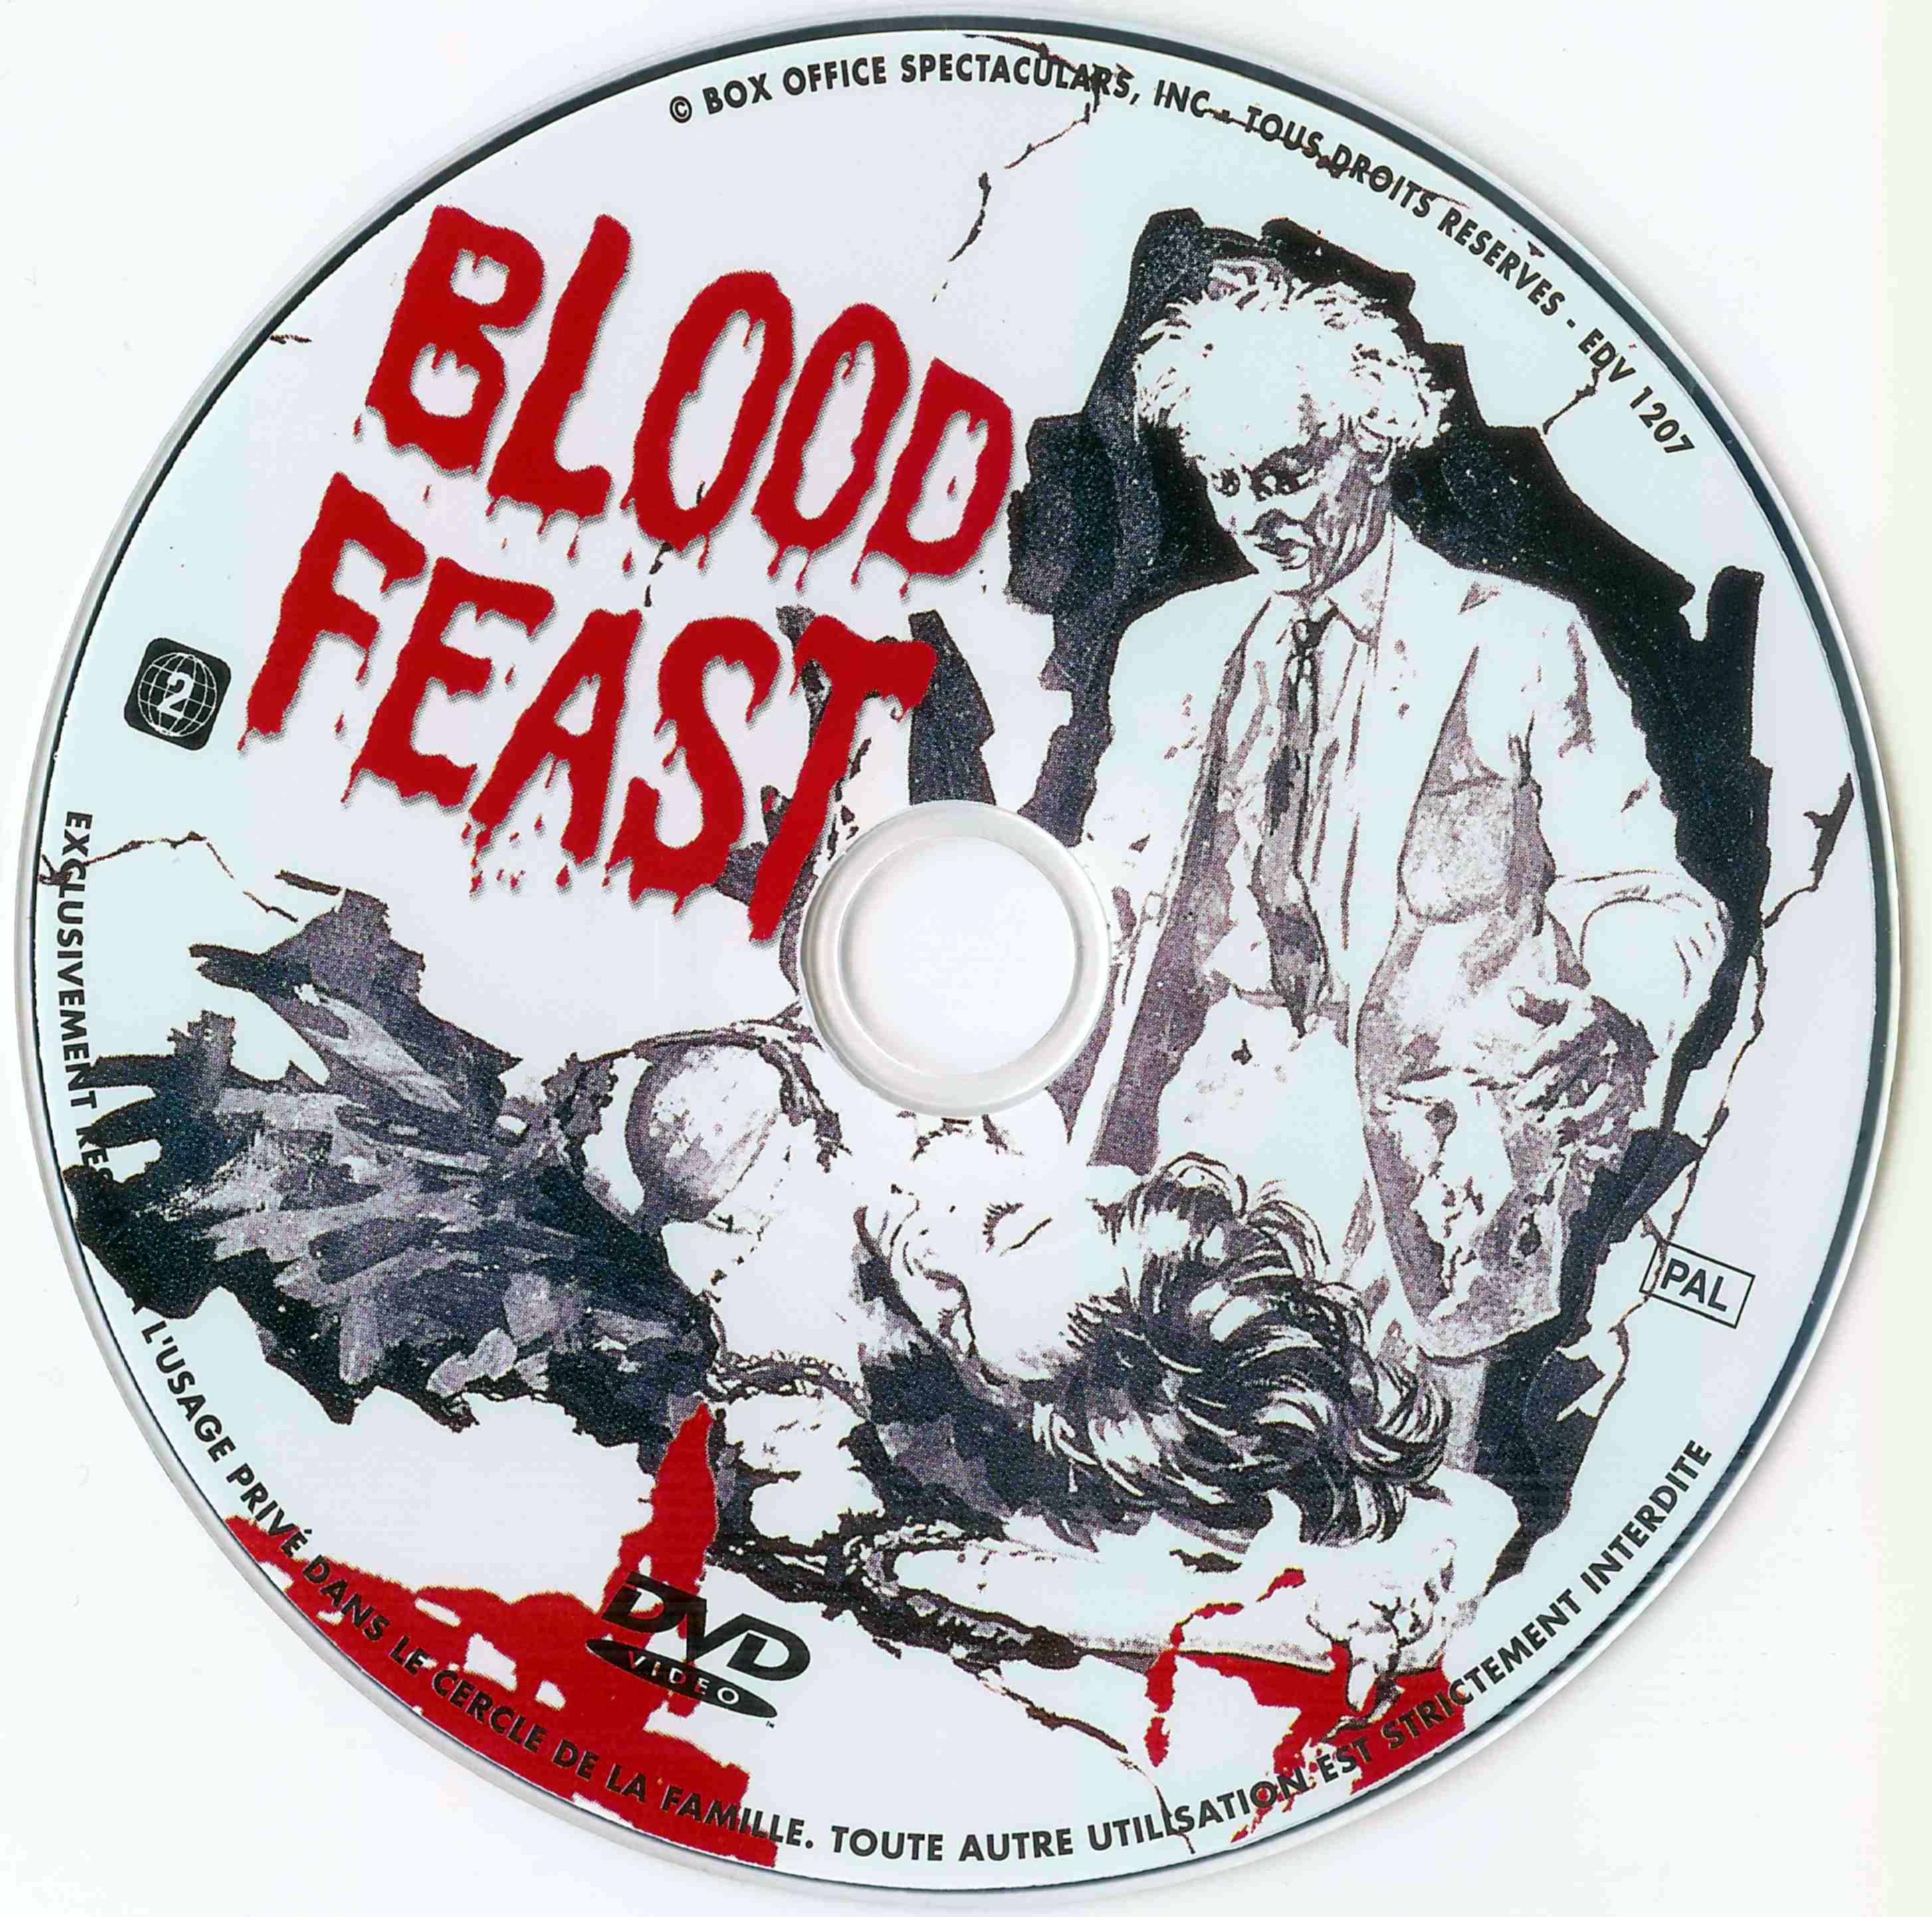 Blood feast